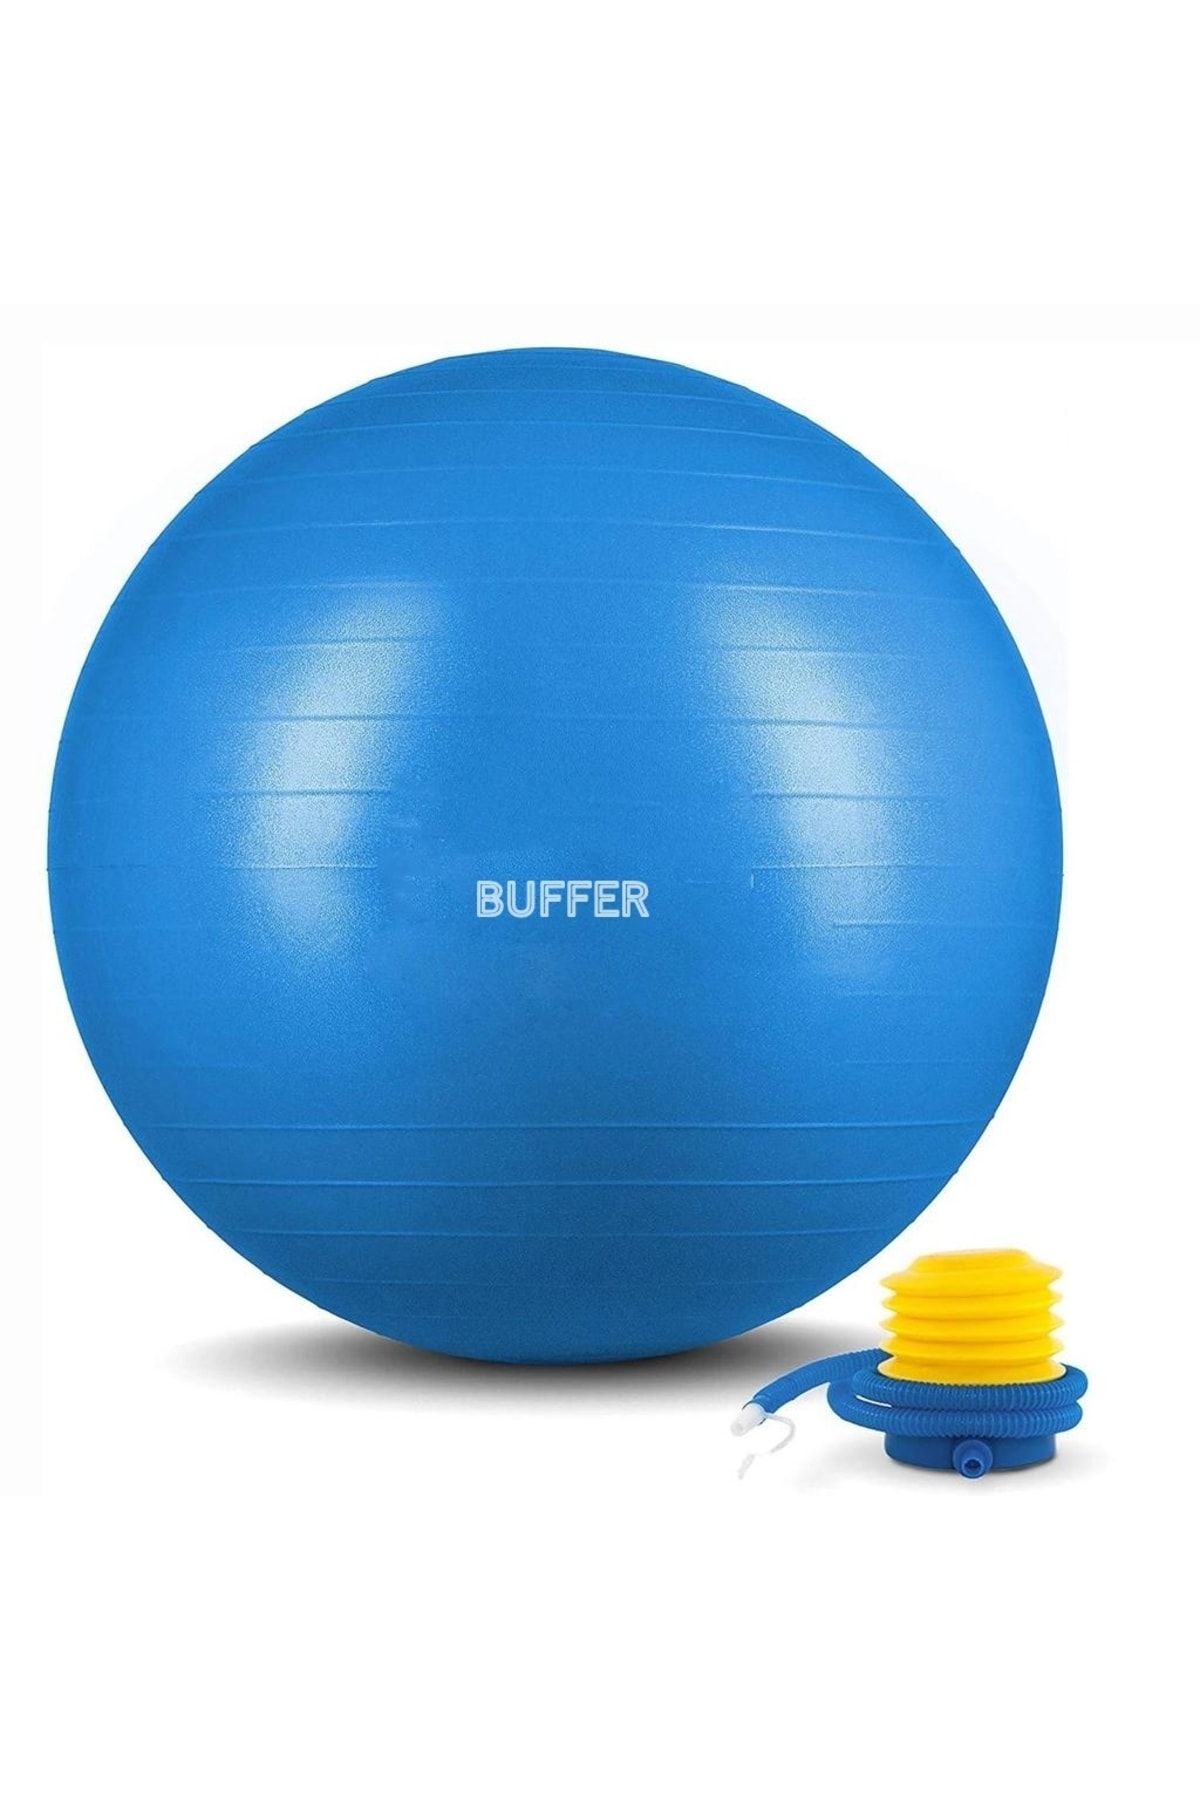 Buffer Dayanıklı Yüksek Kalite Fitilli Pilates Topu Ve Pompa Seti Denge,aerobik,yoga,fitness Topu